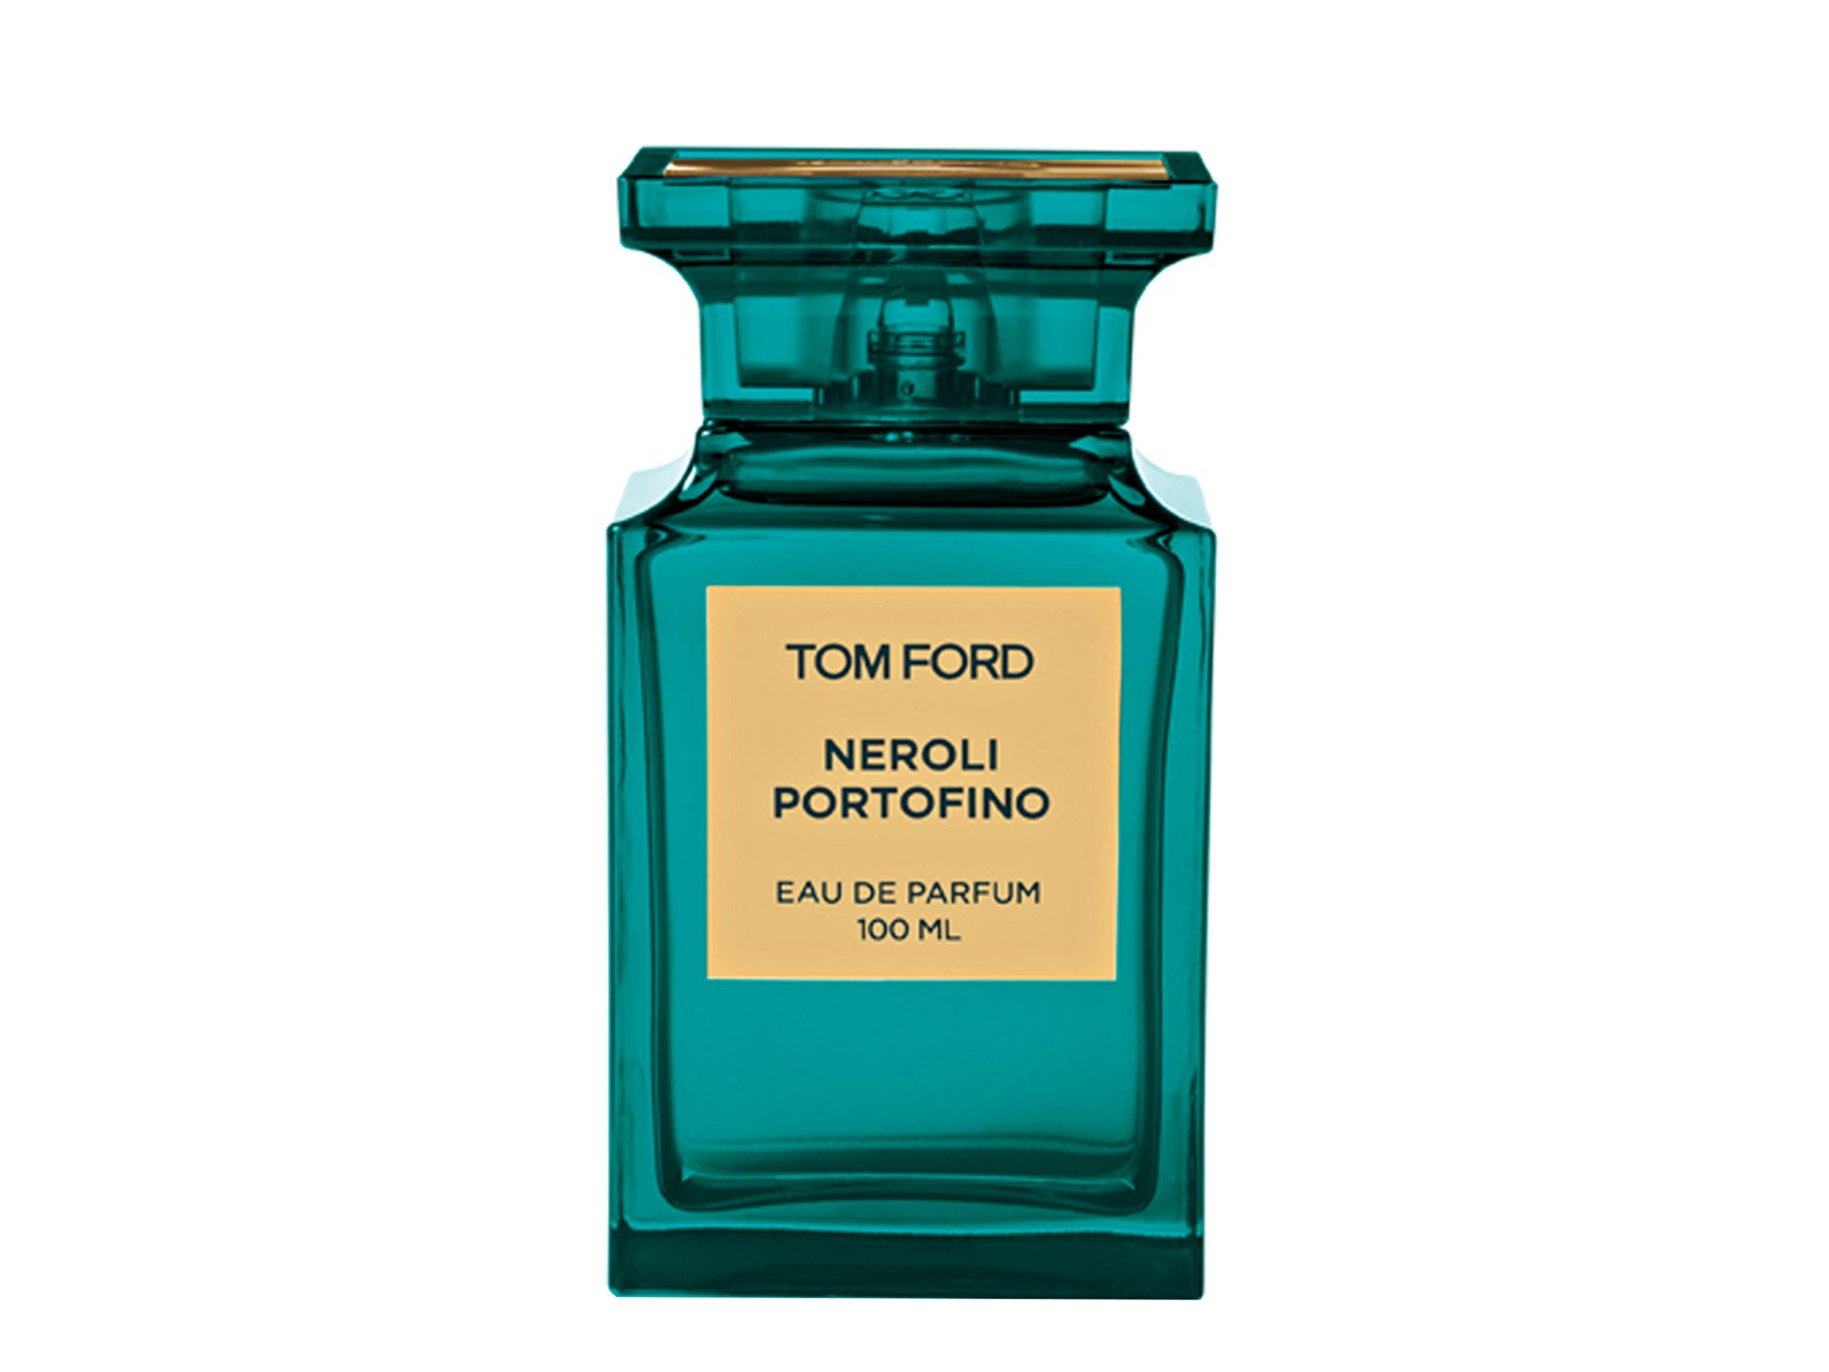 Tom Ford Neroli Portofino Eau De Parfum 100ml - Harvey Nichols